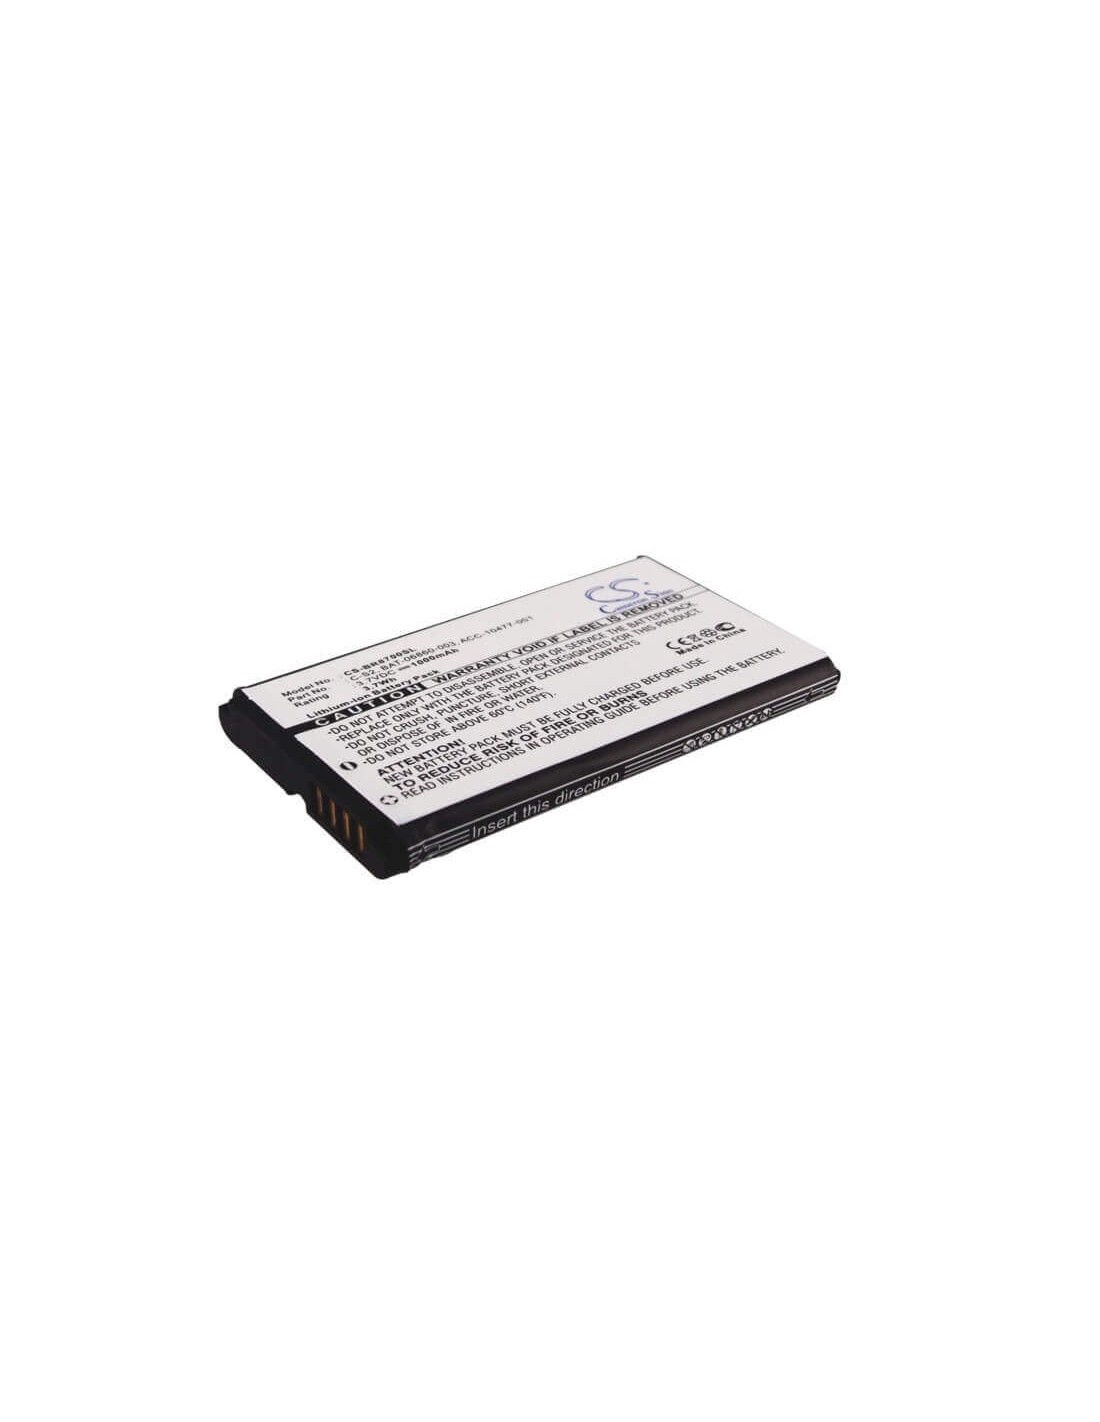 Battery for Blackberry 8700, 8700c, 8700f 3.7V, 1000mAh - 3.70Wh